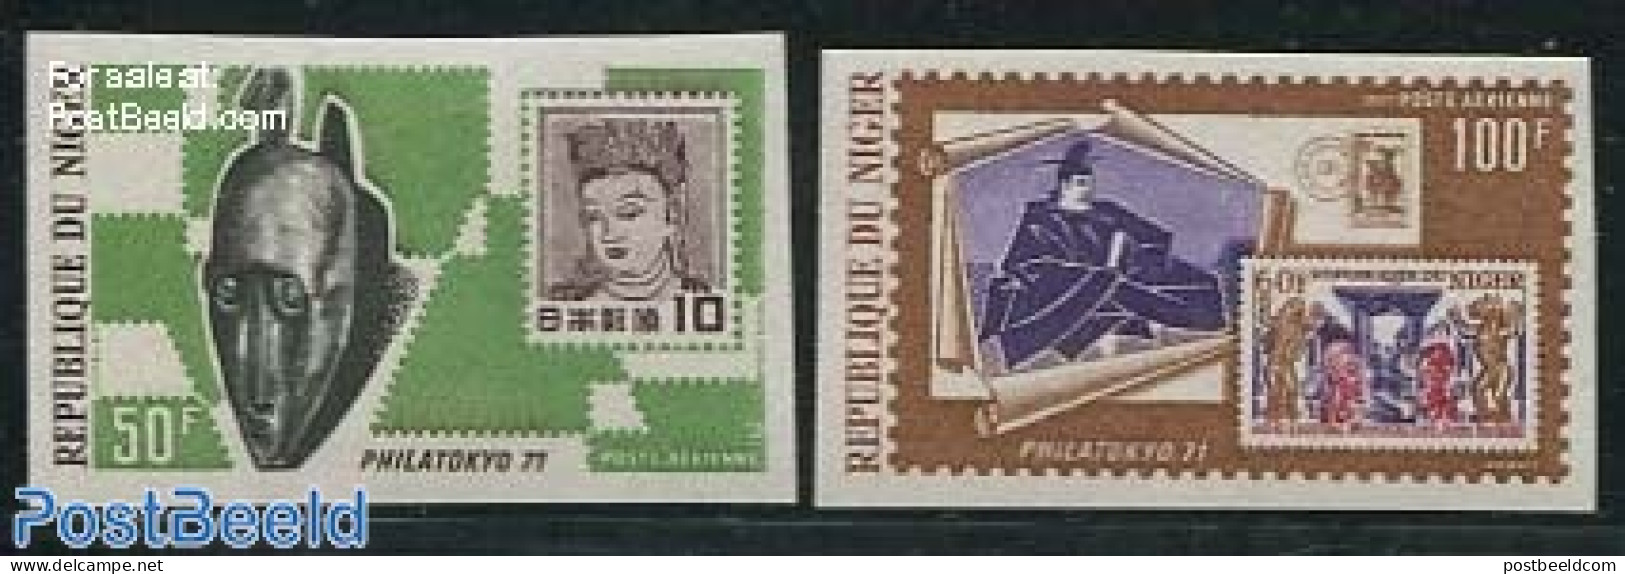 Niger 1971 Philatokyo 2v, Imperforated, Mint NH, Stamps On Stamps - Briefmarken Auf Briefmarken